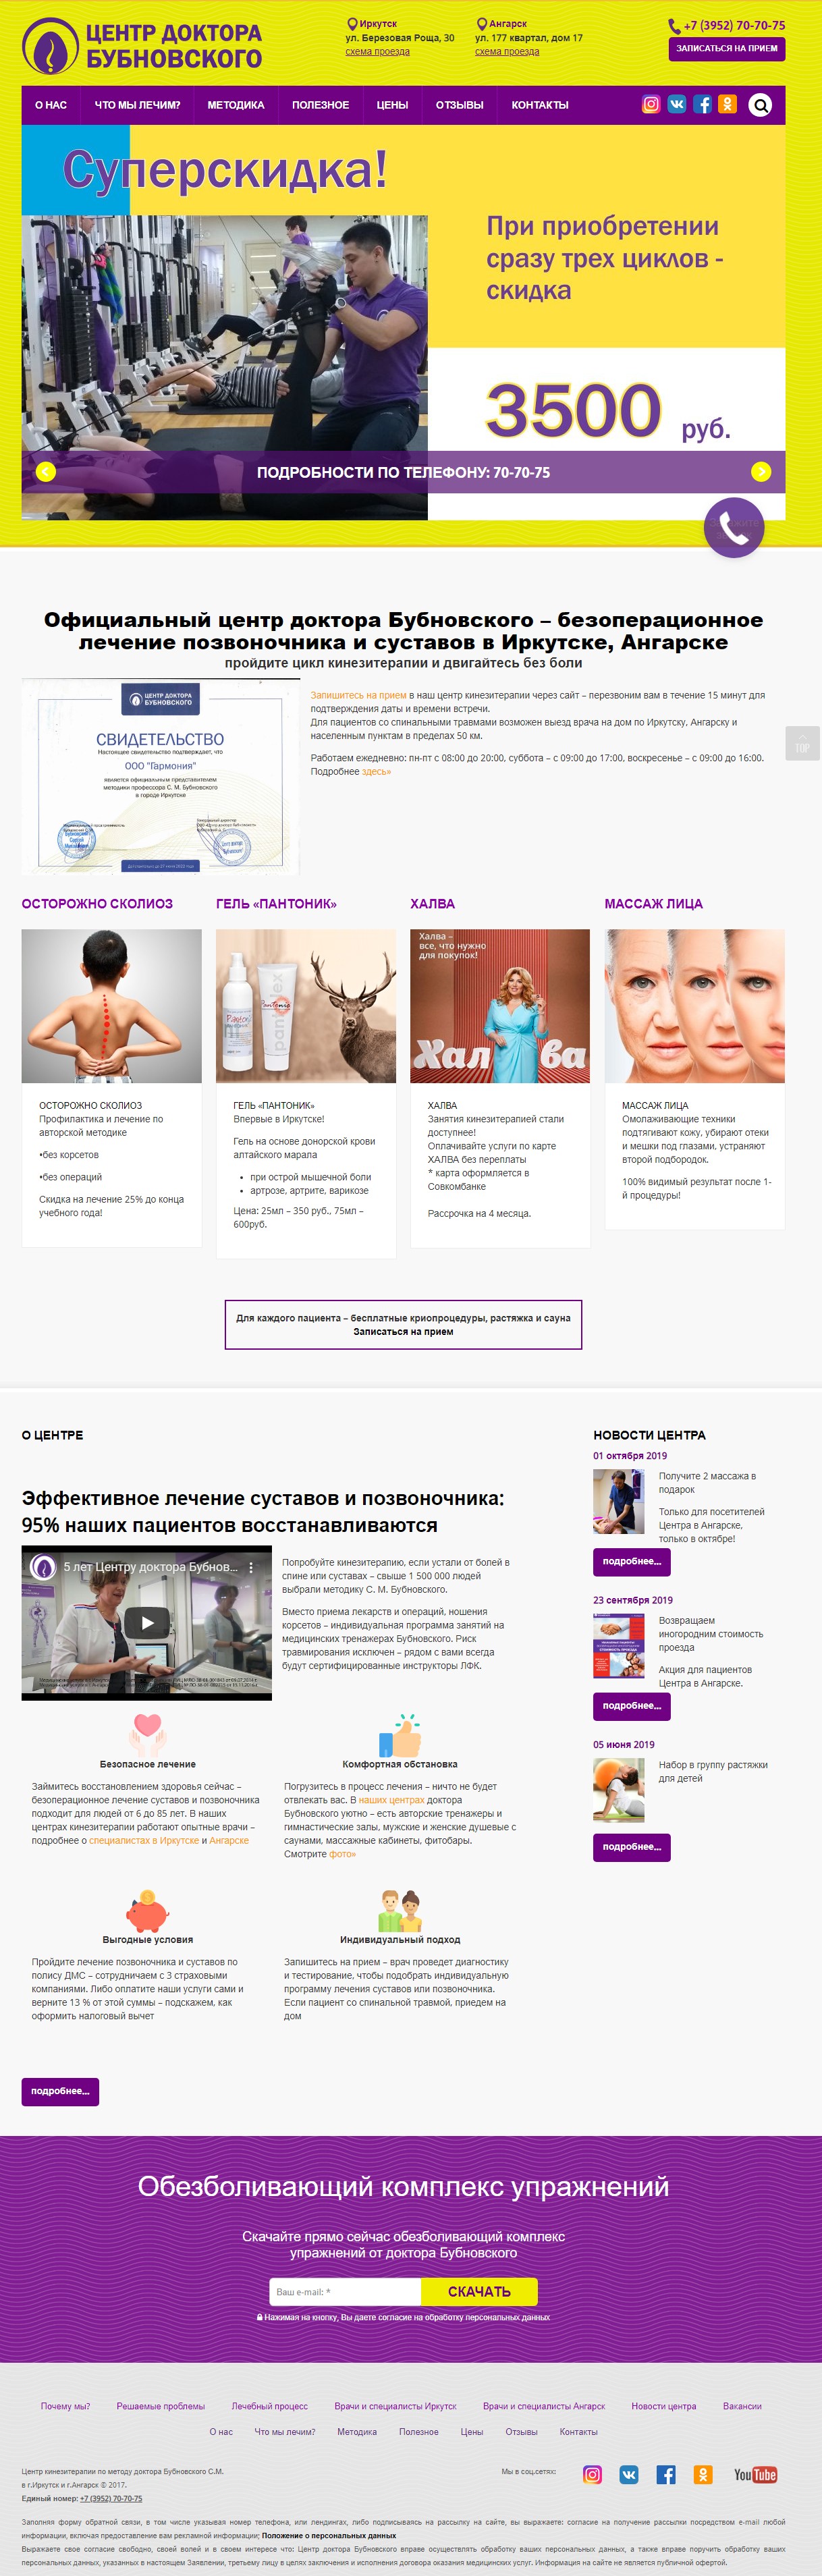 Официальный сайт центра доктора Бубновского в Ангарске и Иркутске